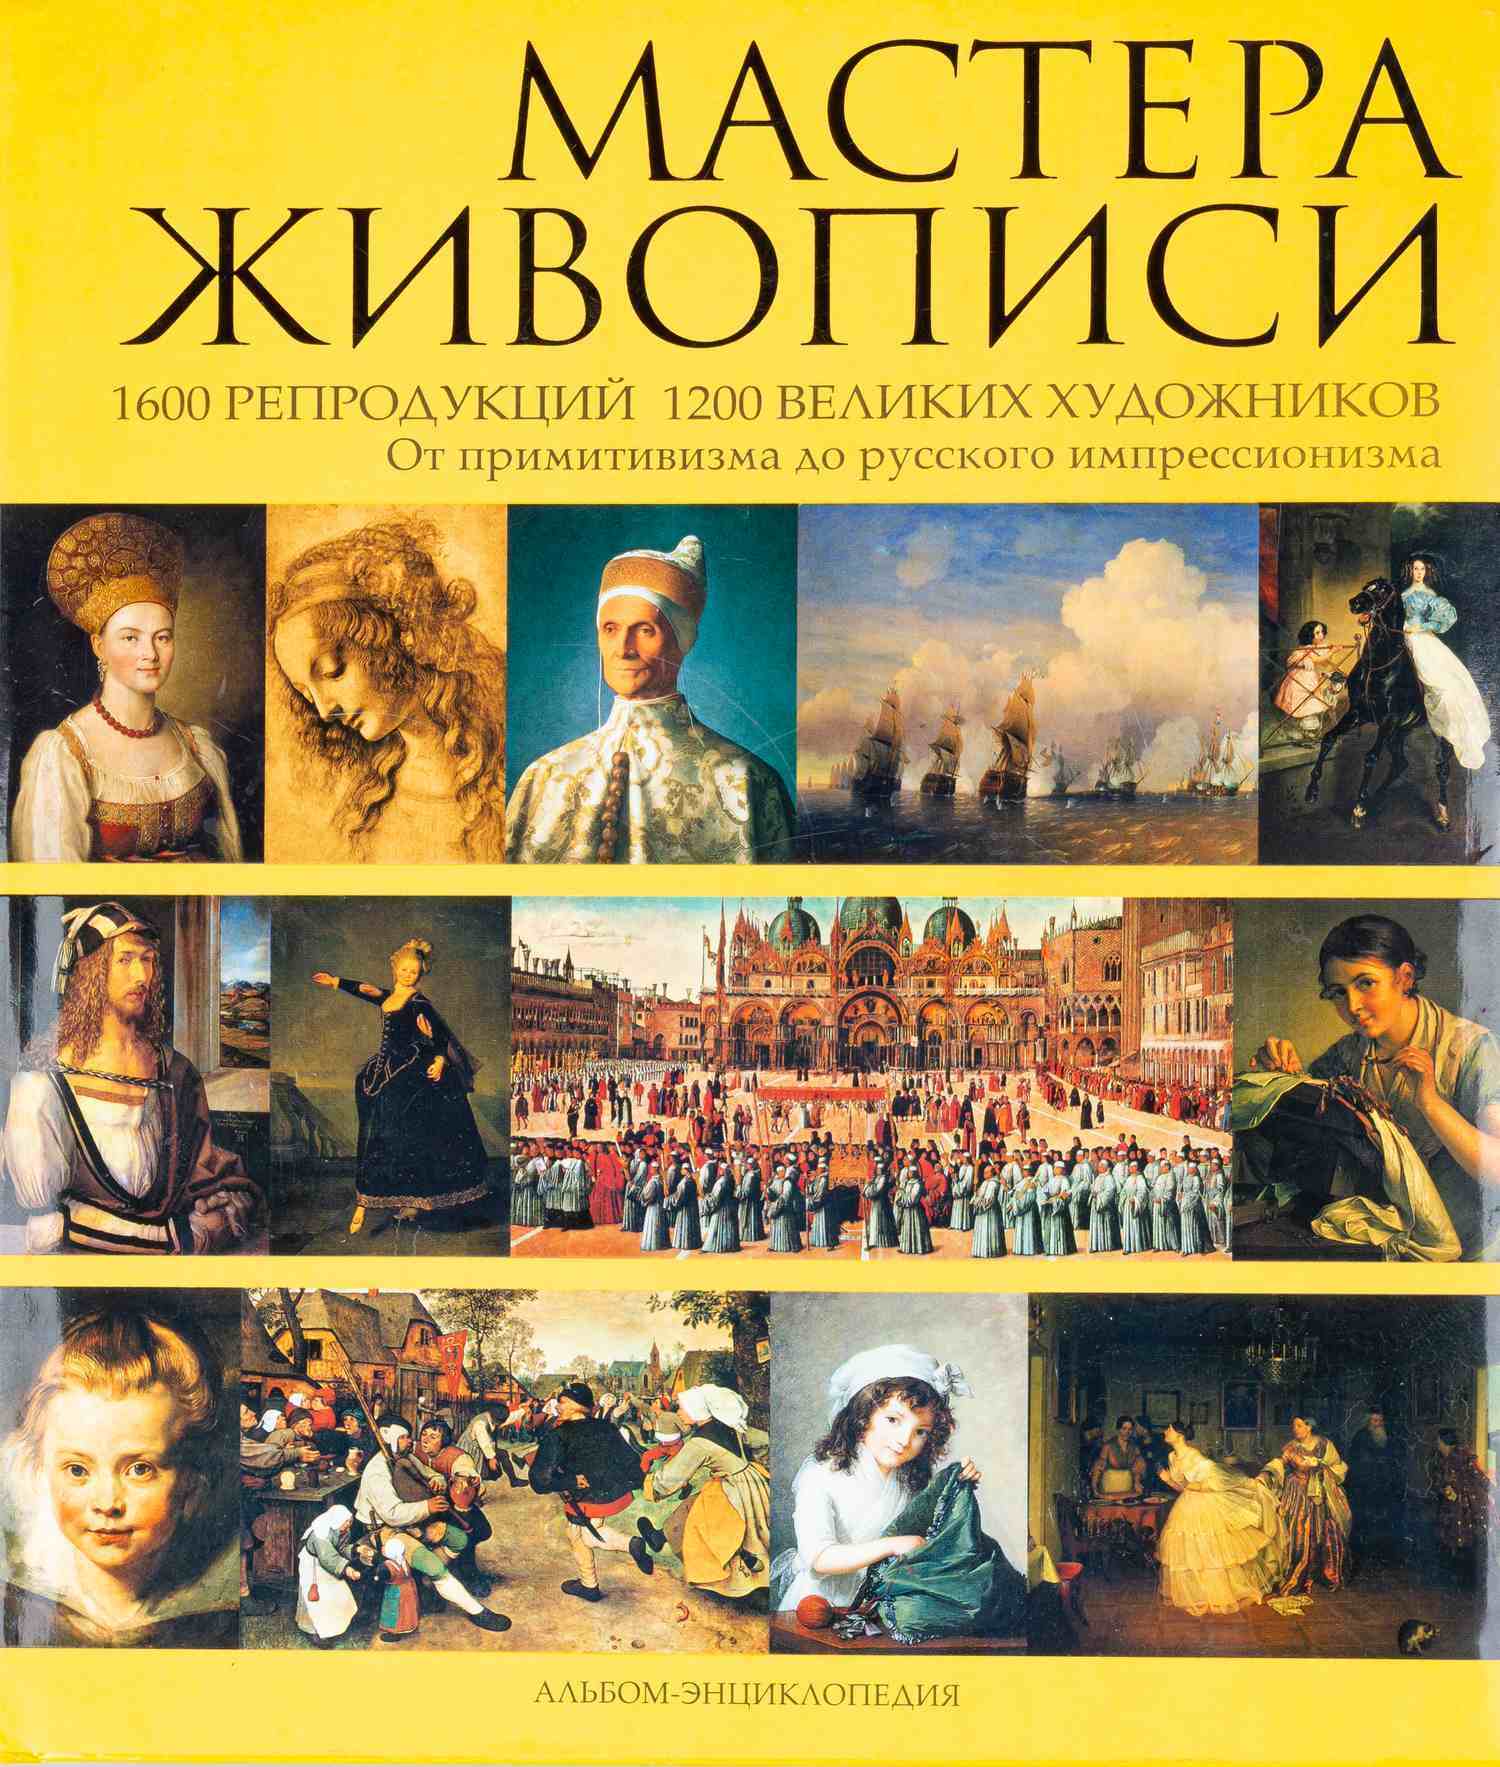 Андреев А.Н. Мастера живописи. Альбом-энциклопедия (М., 2008).